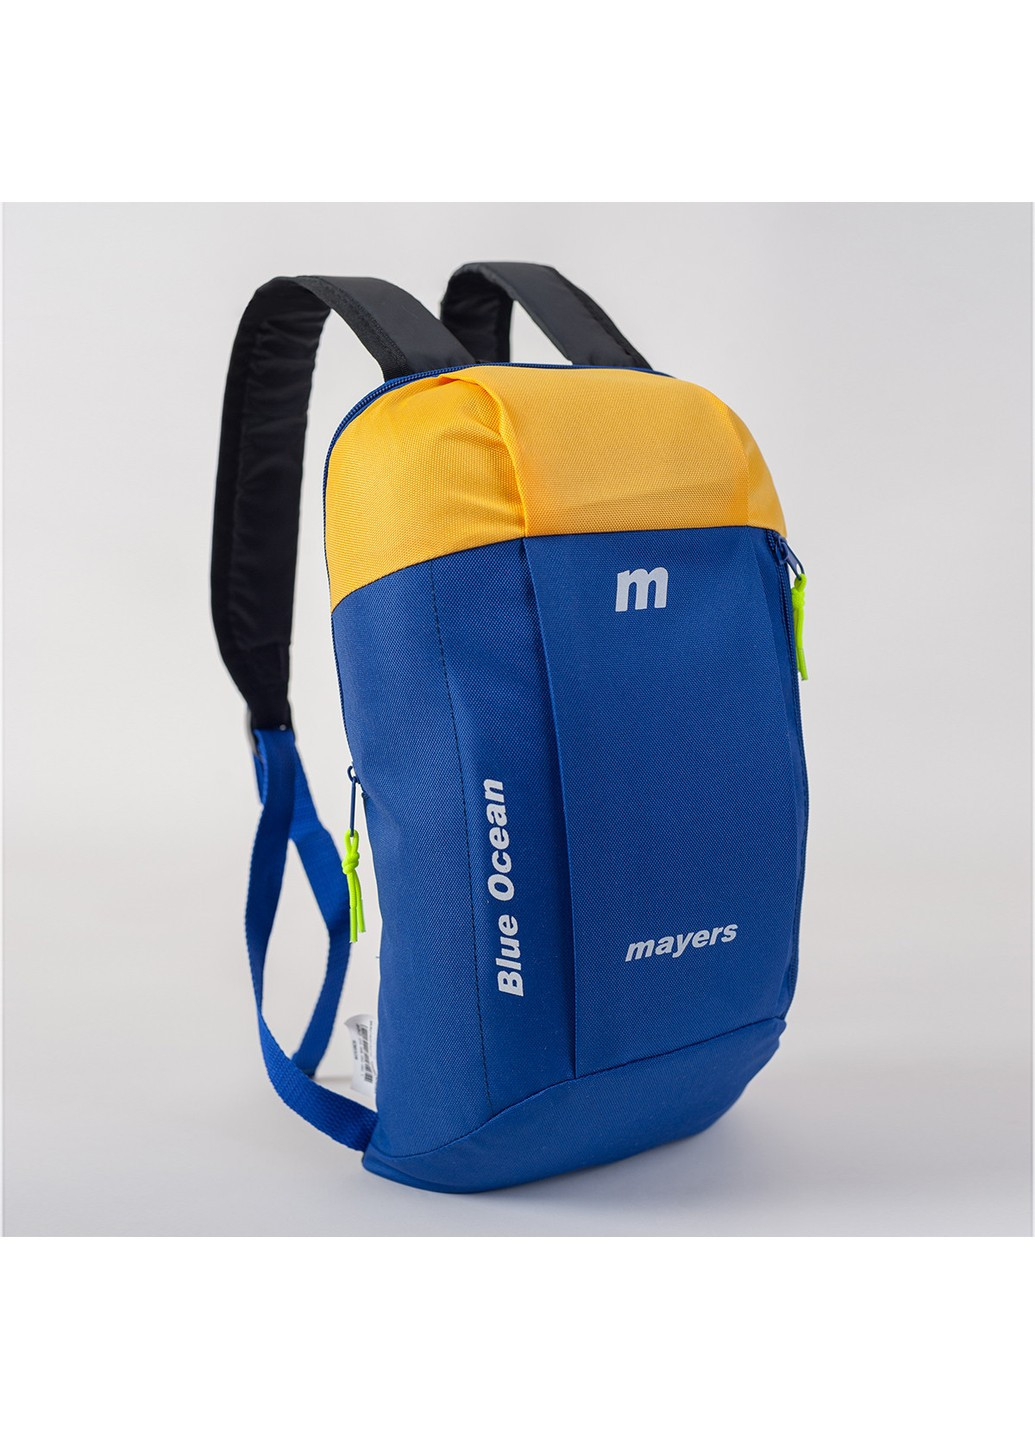 Дитячий рюкзак синій з жовтим для прогулянок тренувань легкий No Brand (258591349)